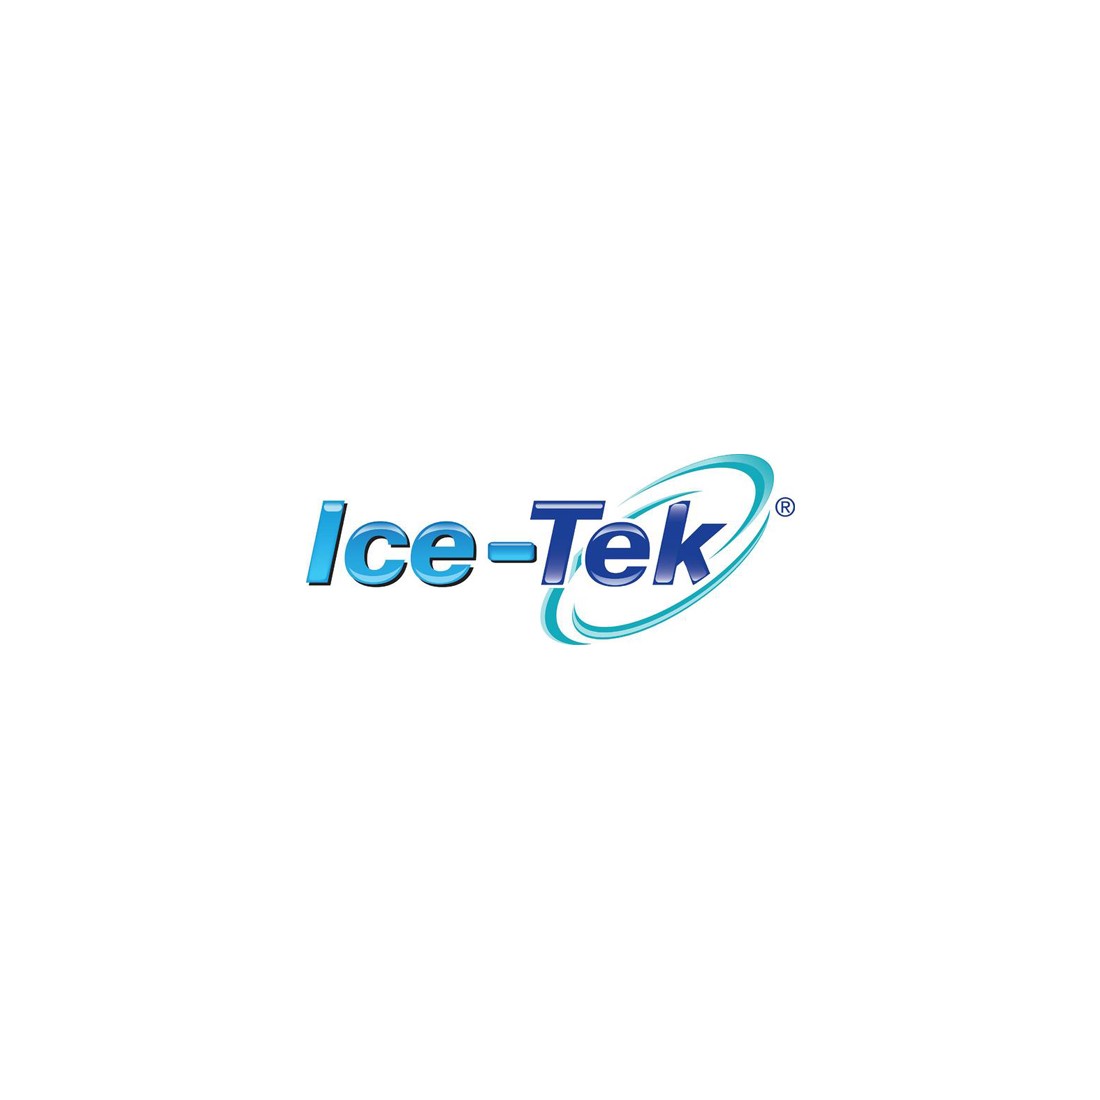 IceTek